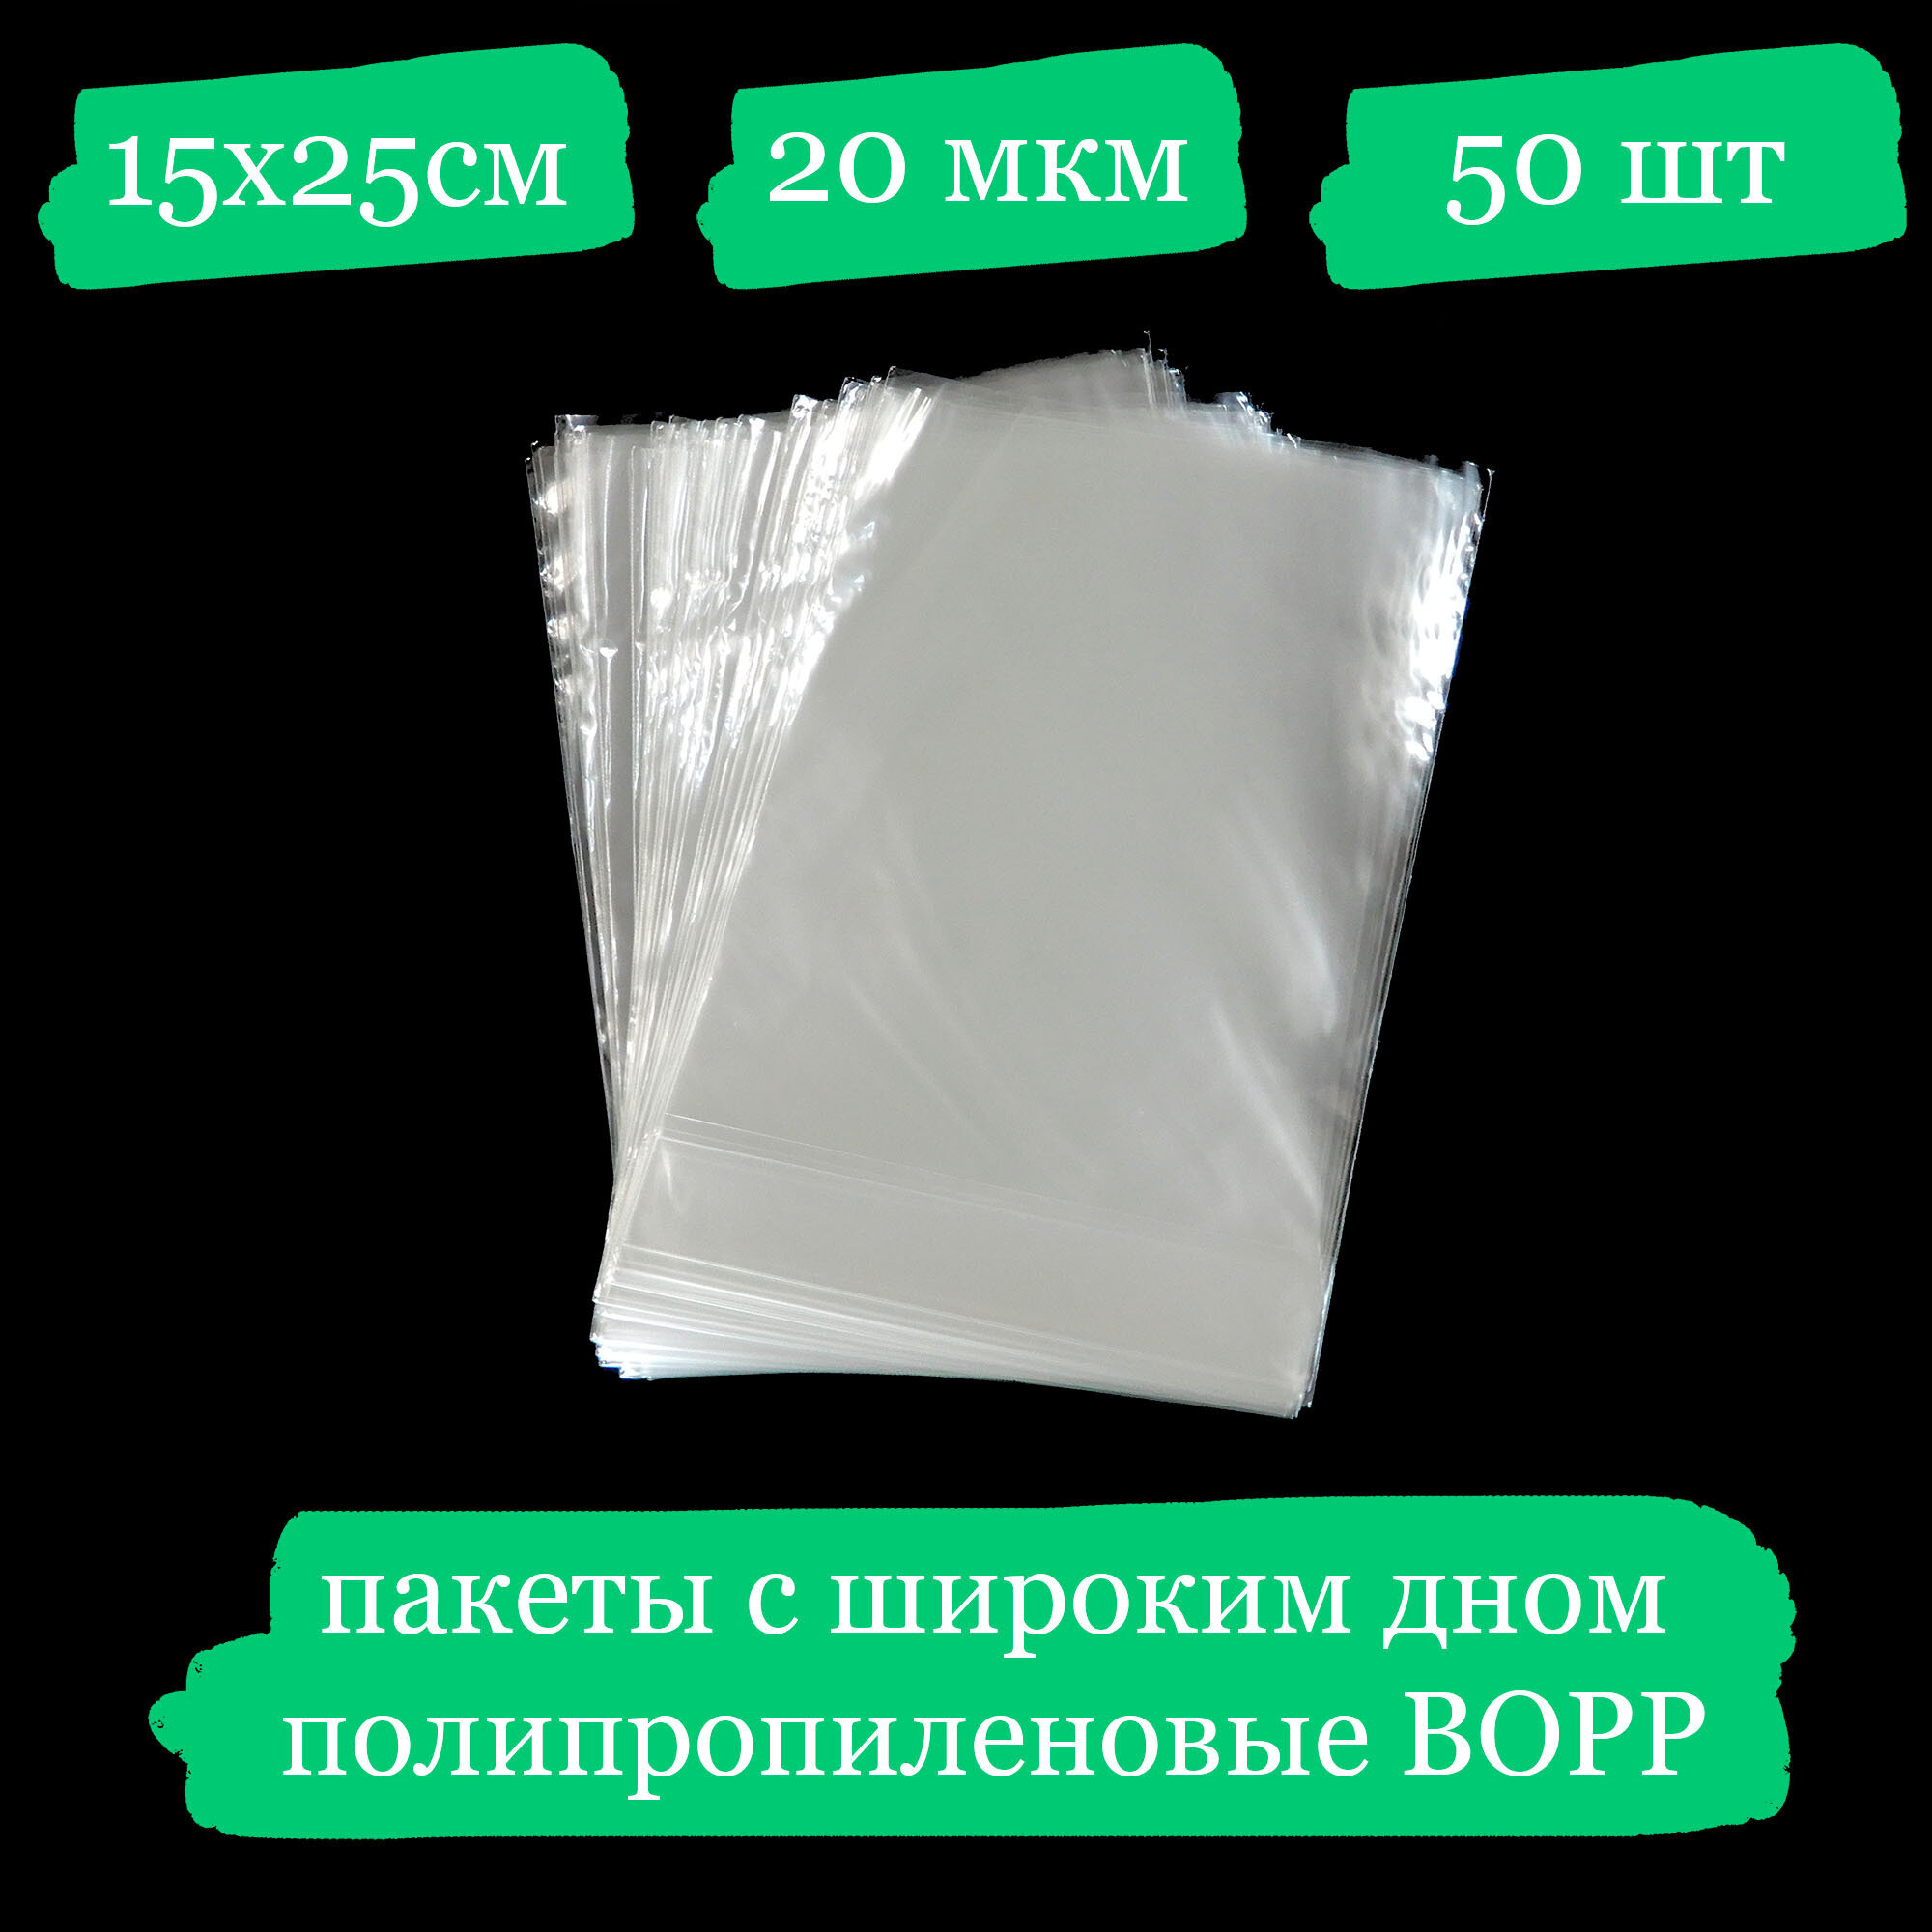 Полипропиленовые пакетики с широким дном - 15x25, 20 мкм - 50 шт.